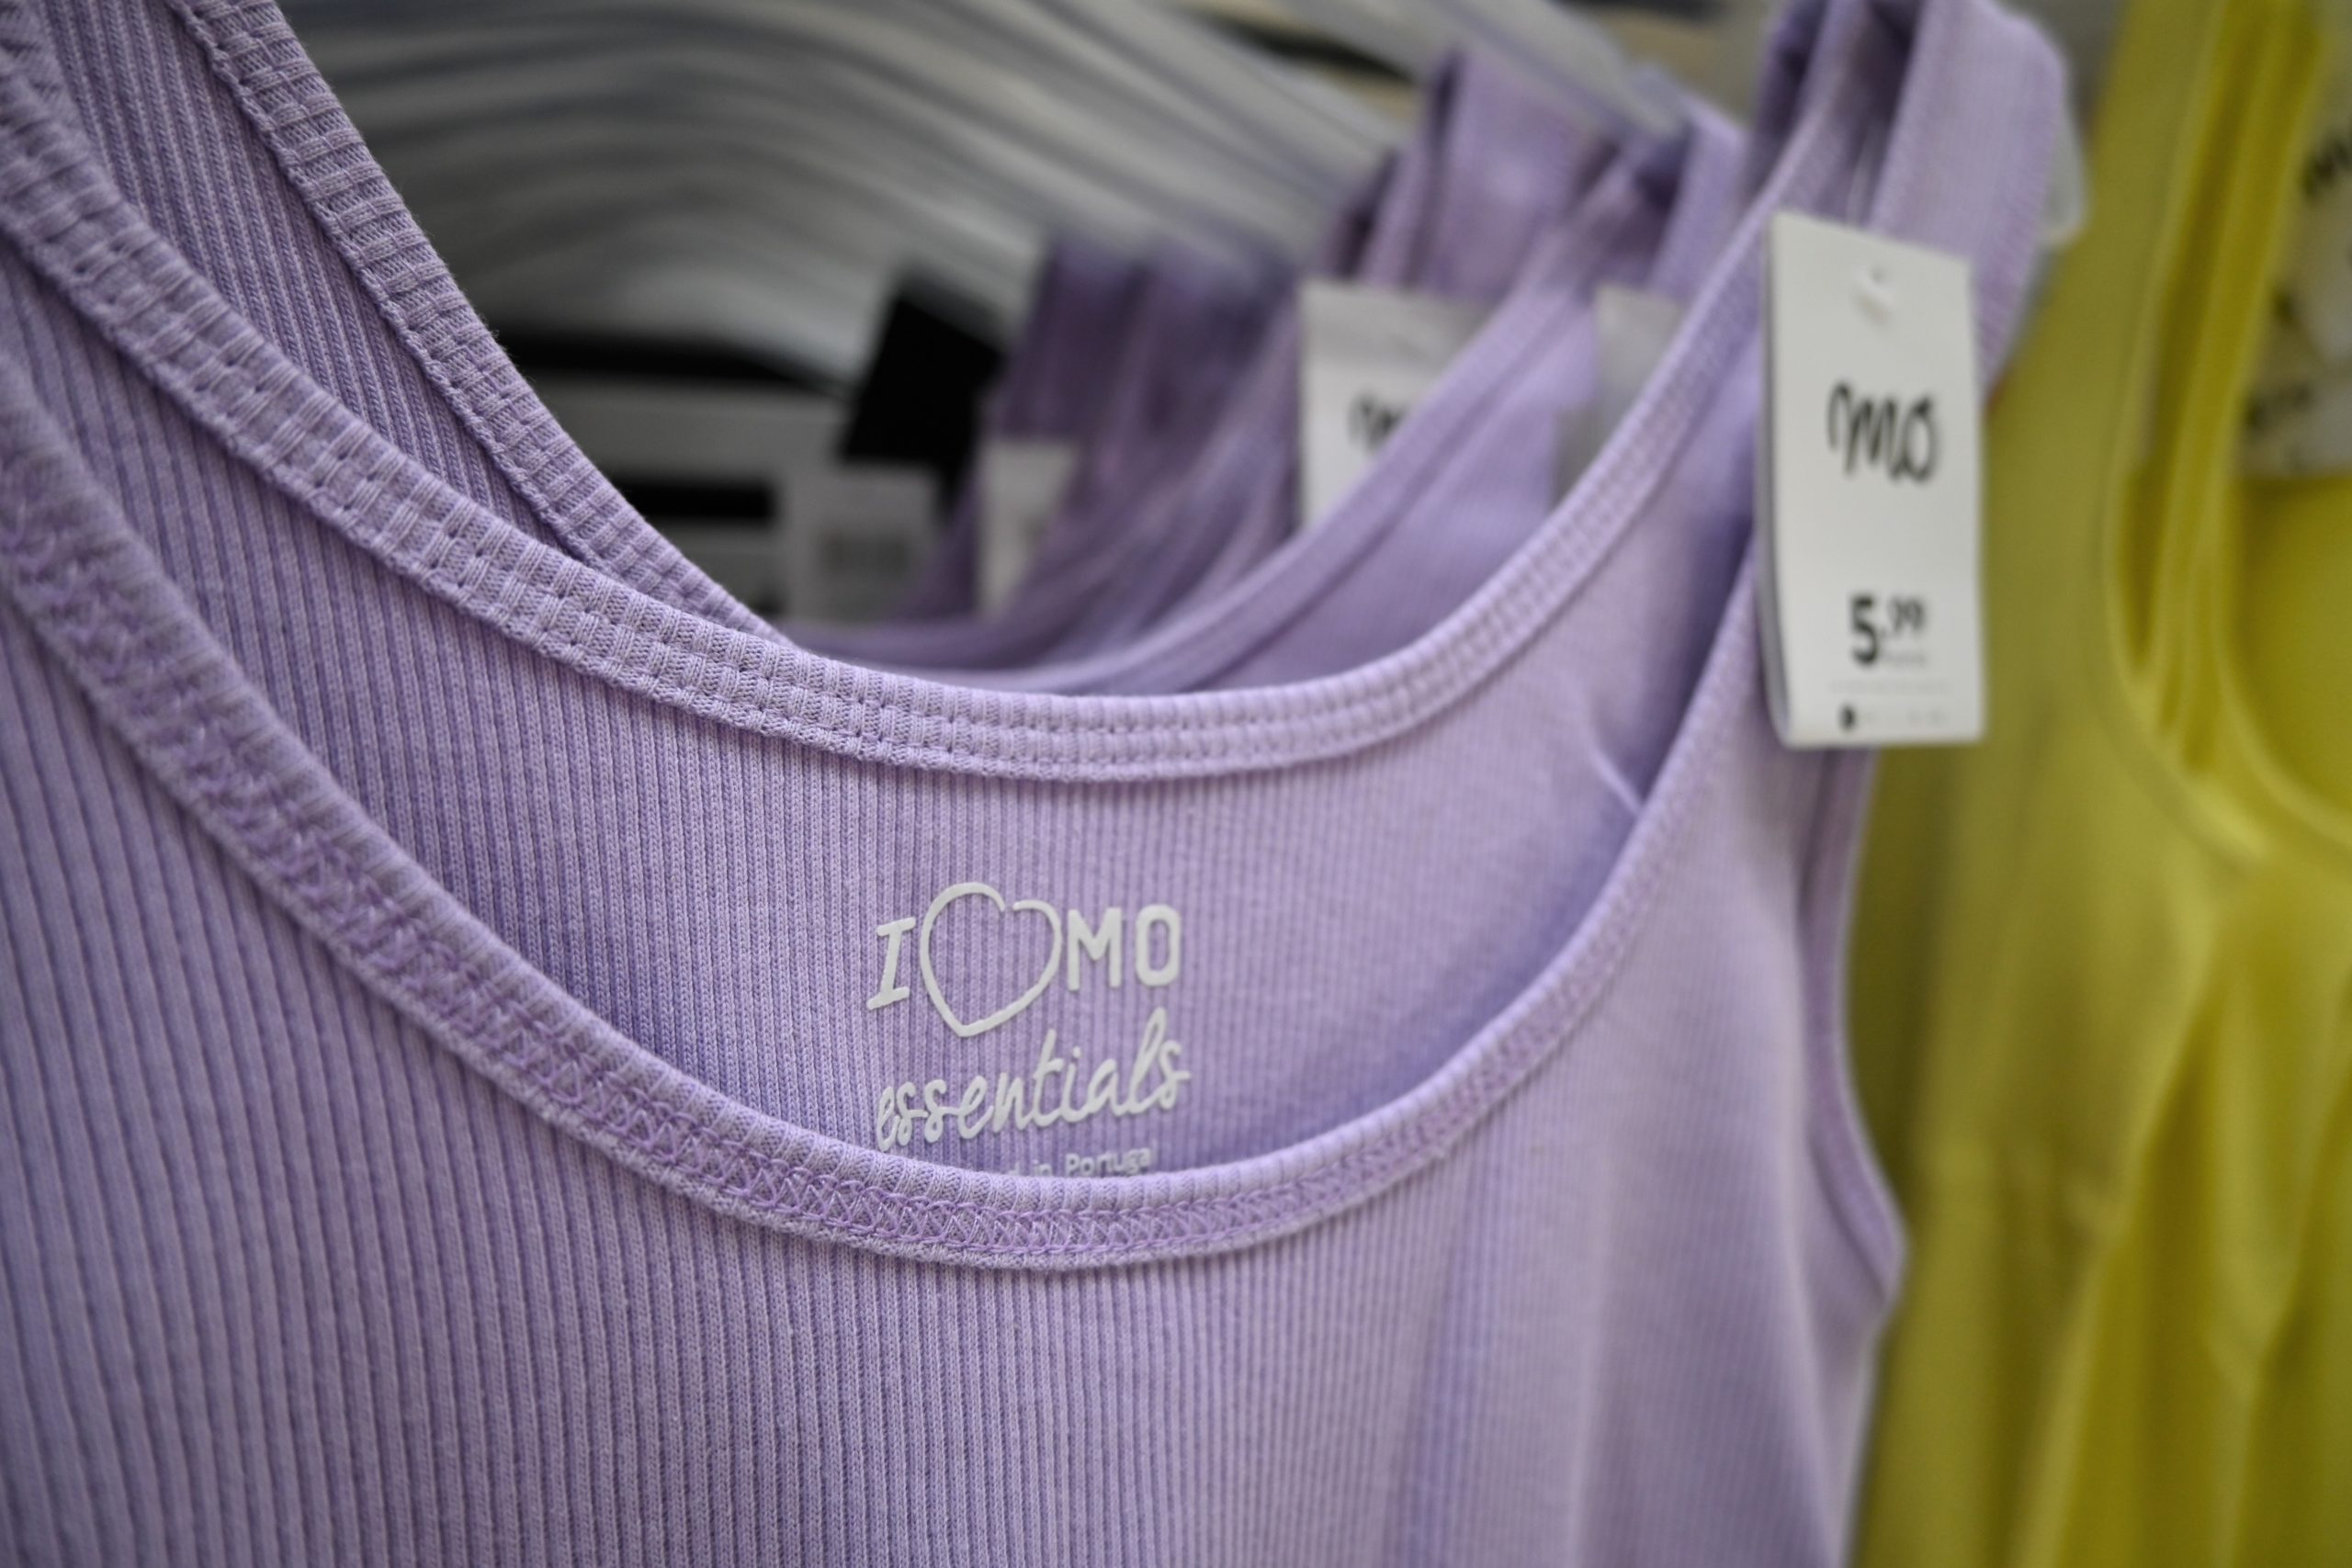 Family Cash sigue expandiendo la marca textil Mo con una nueva apertura en Carcaixent